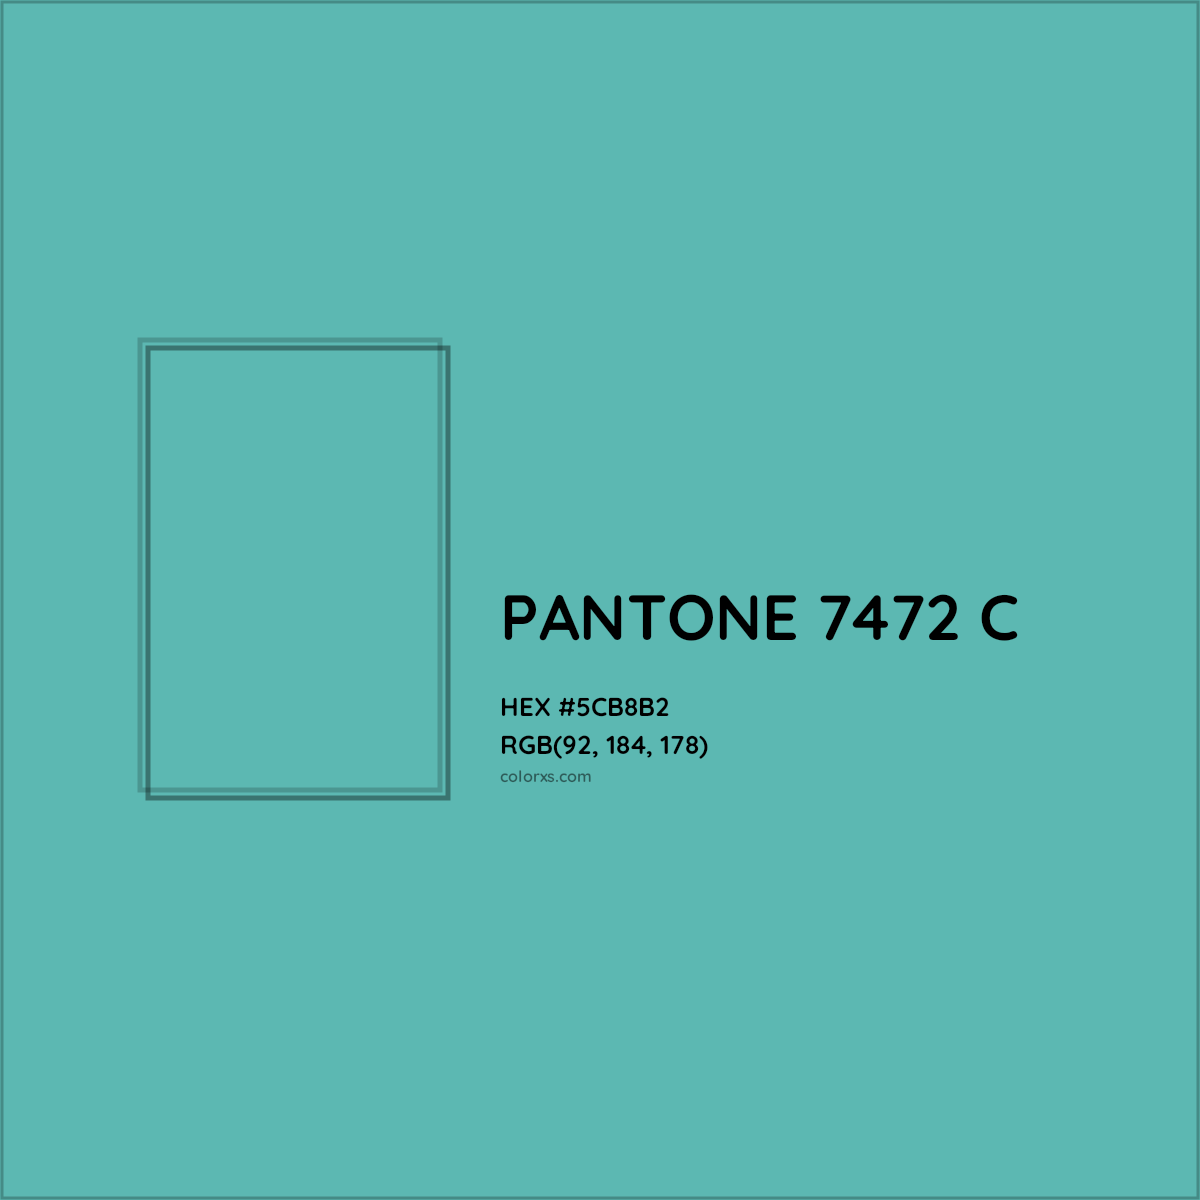 HEX #5CB8B2 PANTONE 7472 C CMS Pantone PMS - Color Code